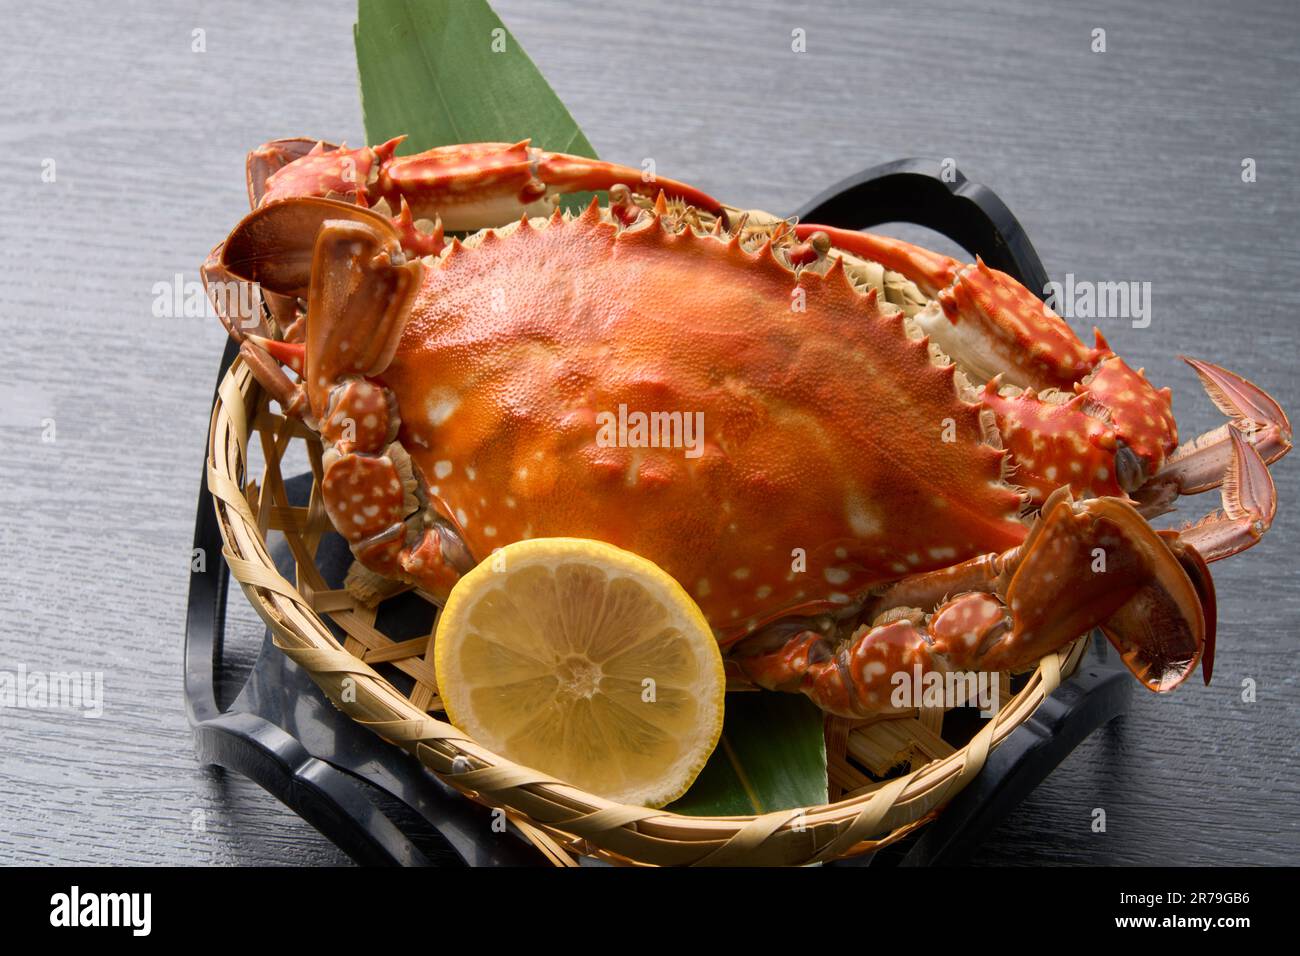 Cuisine japonaise, crabe migrateur à l'eau salée Banque D'Images